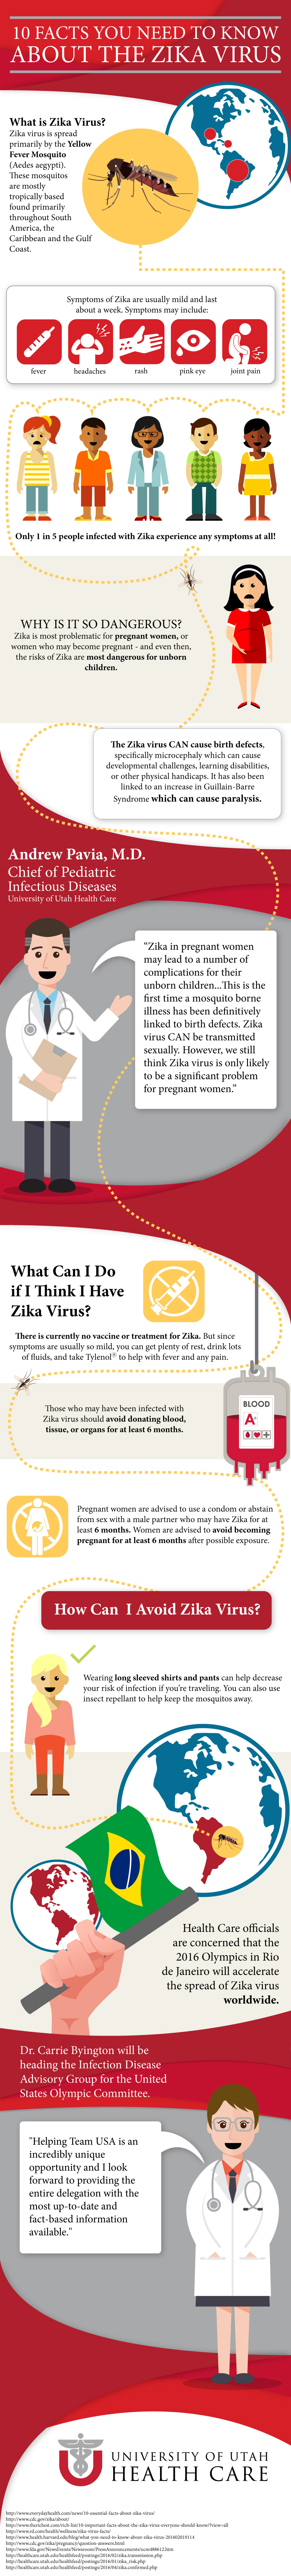 Zika Virus Infographic